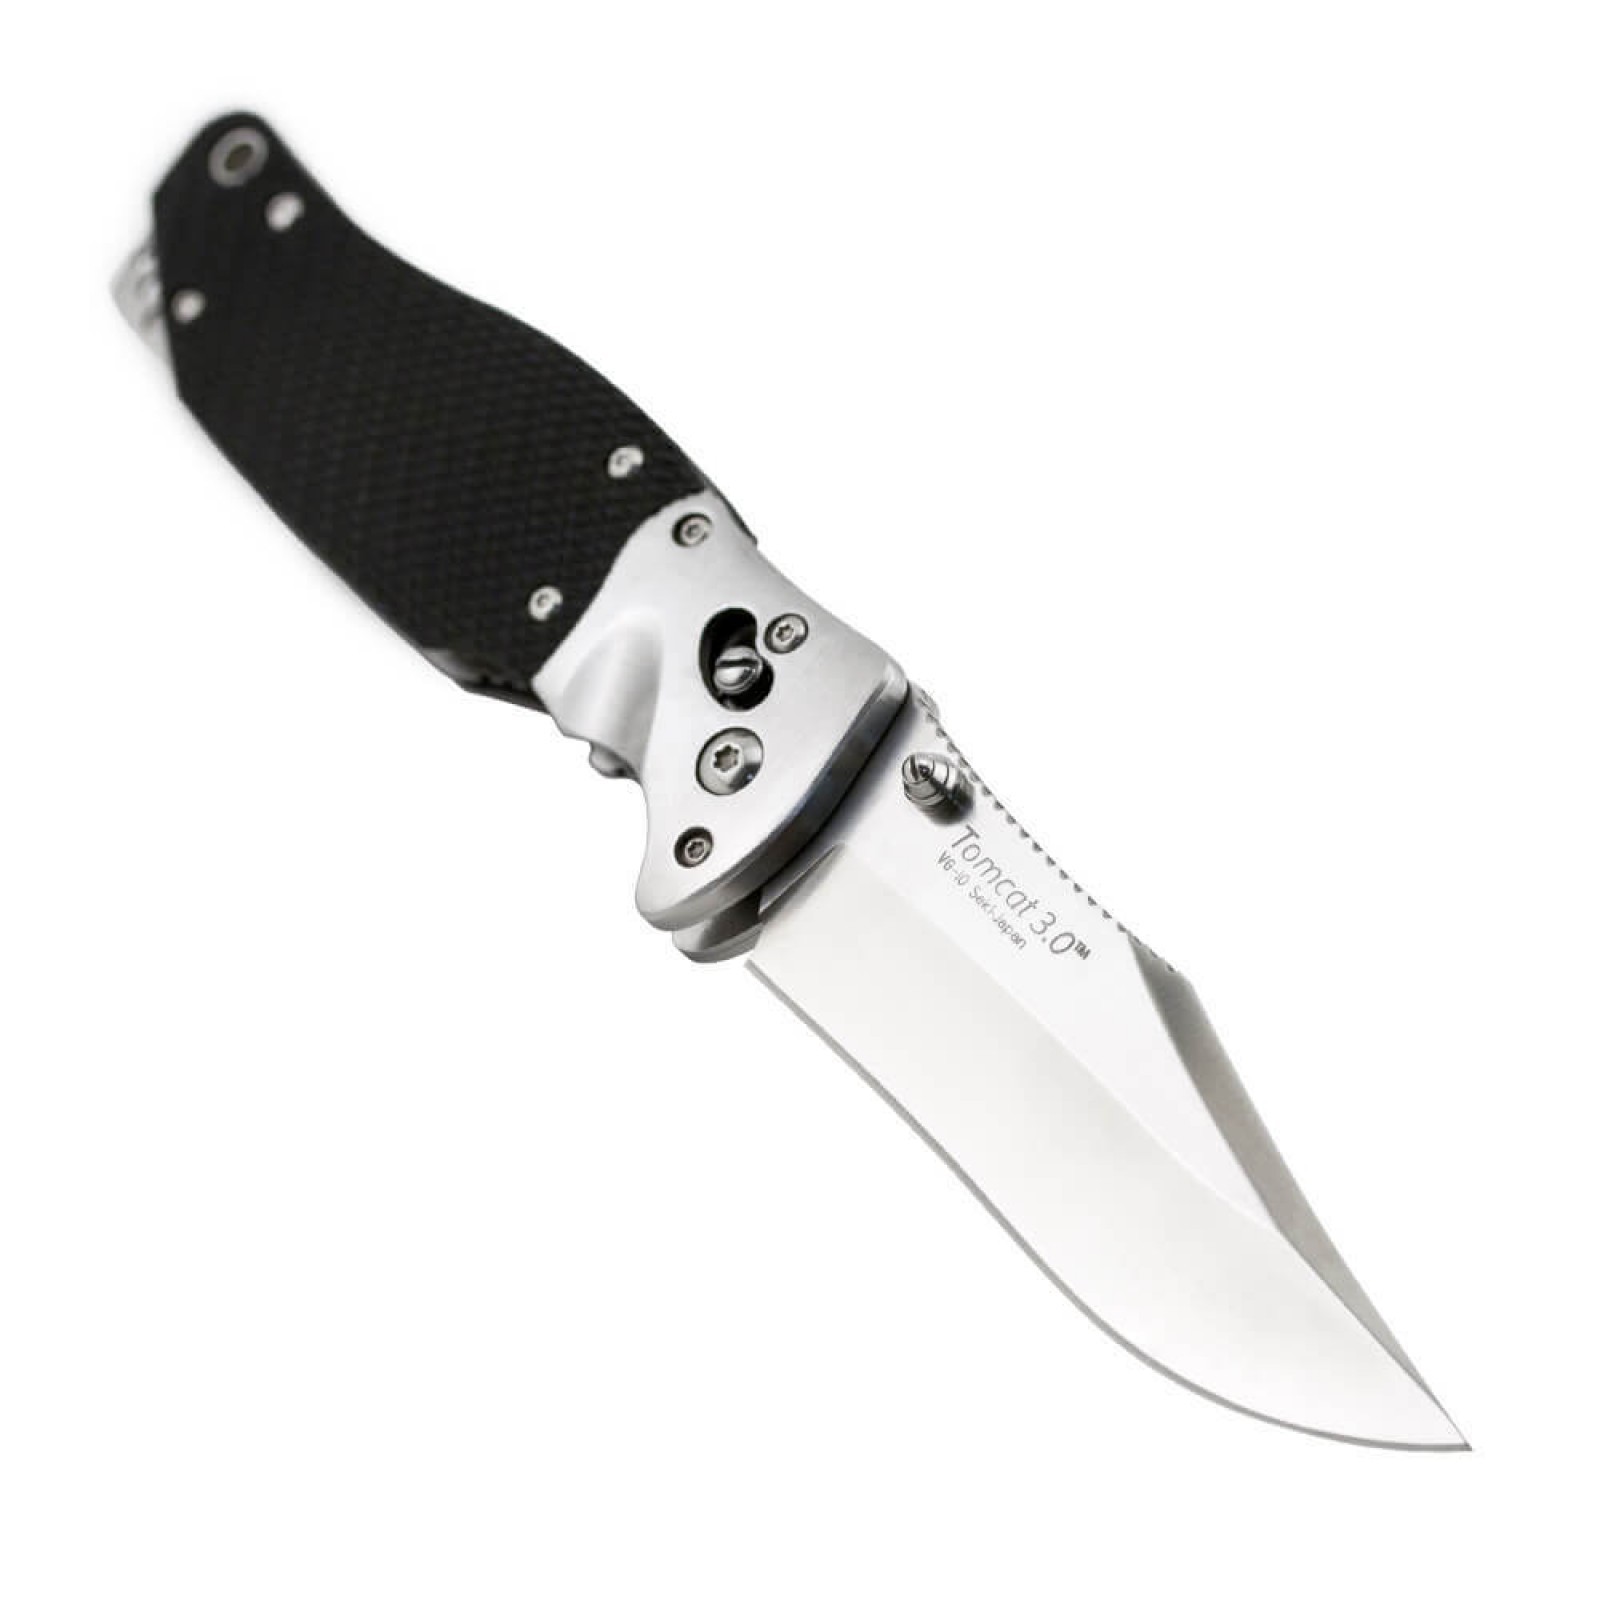 Складной нож Tomcat 3.0 - SOG S95, сталь VG-10, рукоять кратон - фото 5